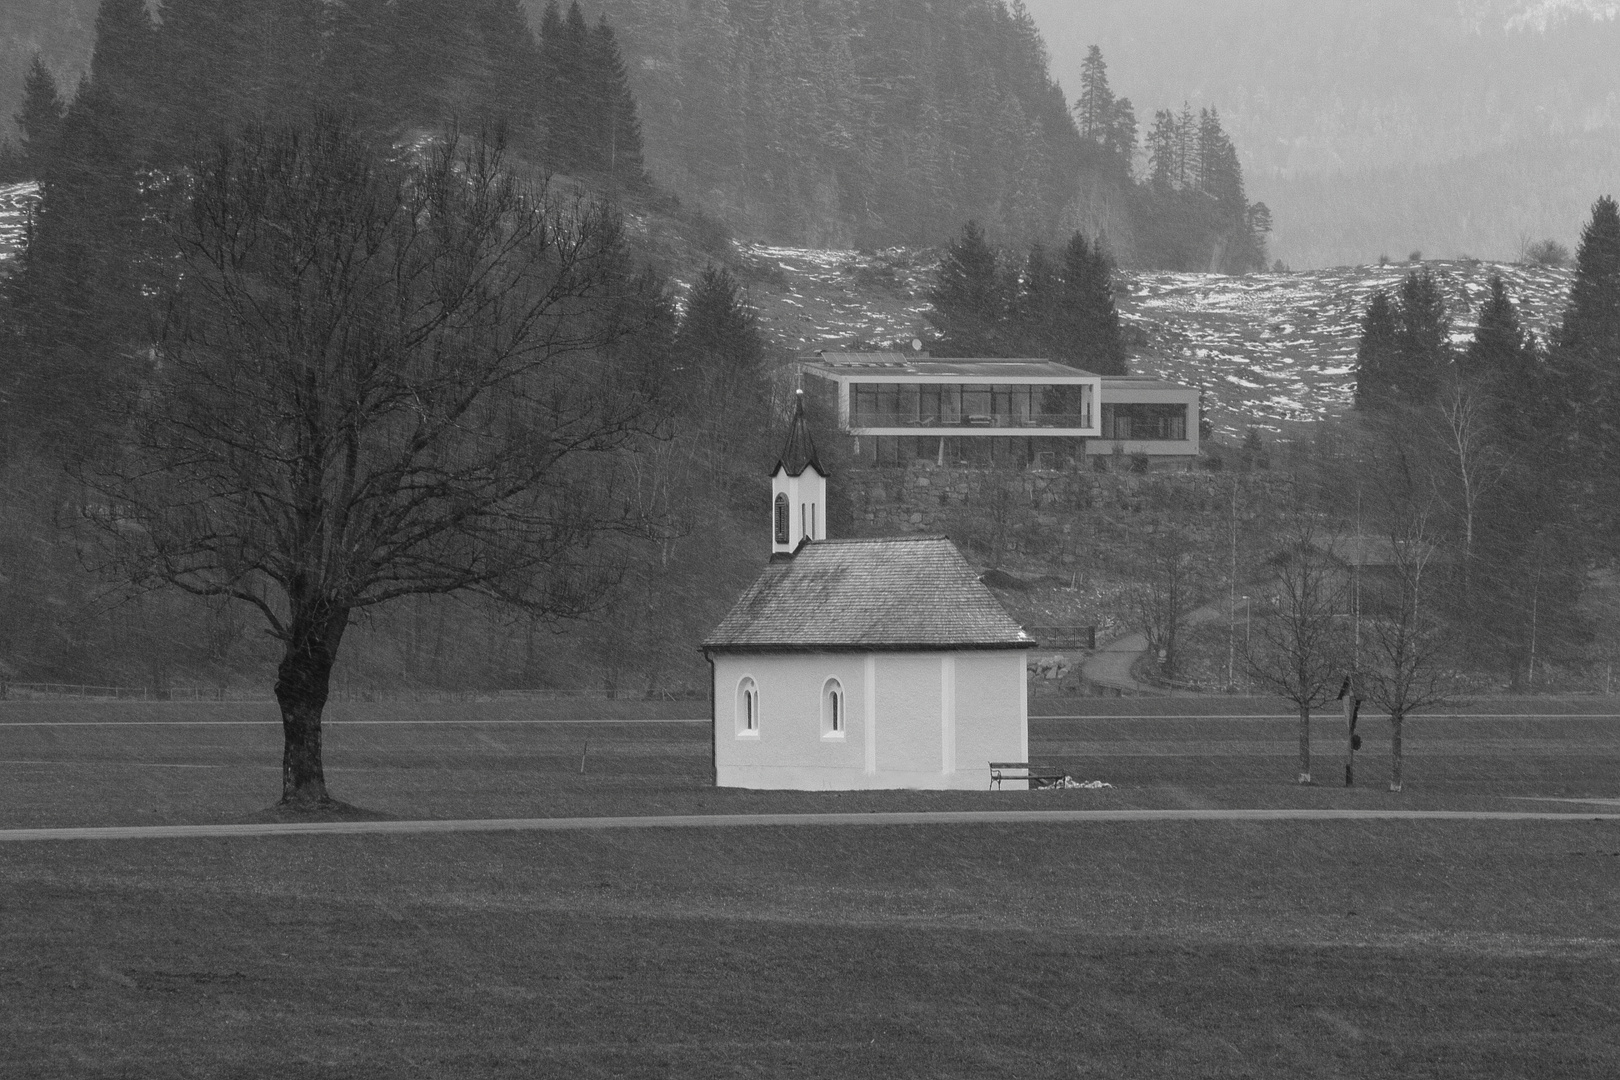 Kapelle zur Heiligen Ottilia im Gemeindegebiet von Lechaschau/Tirol